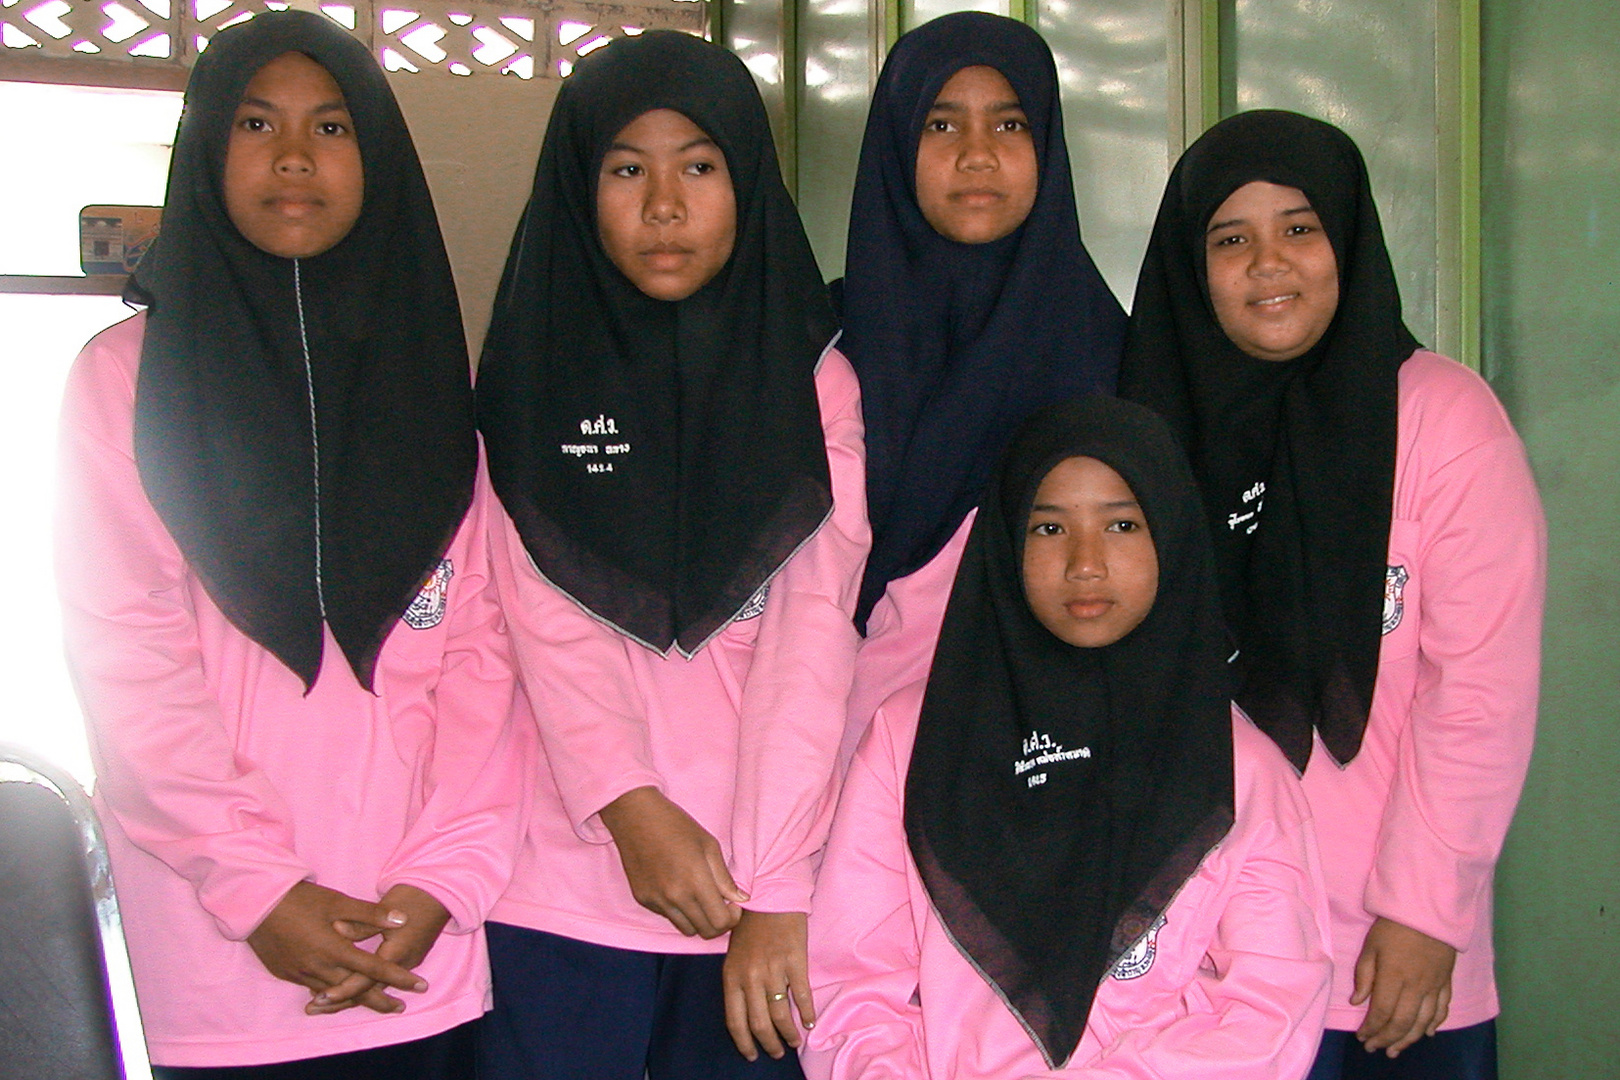 Muslim schoolgirls in southern Thailand